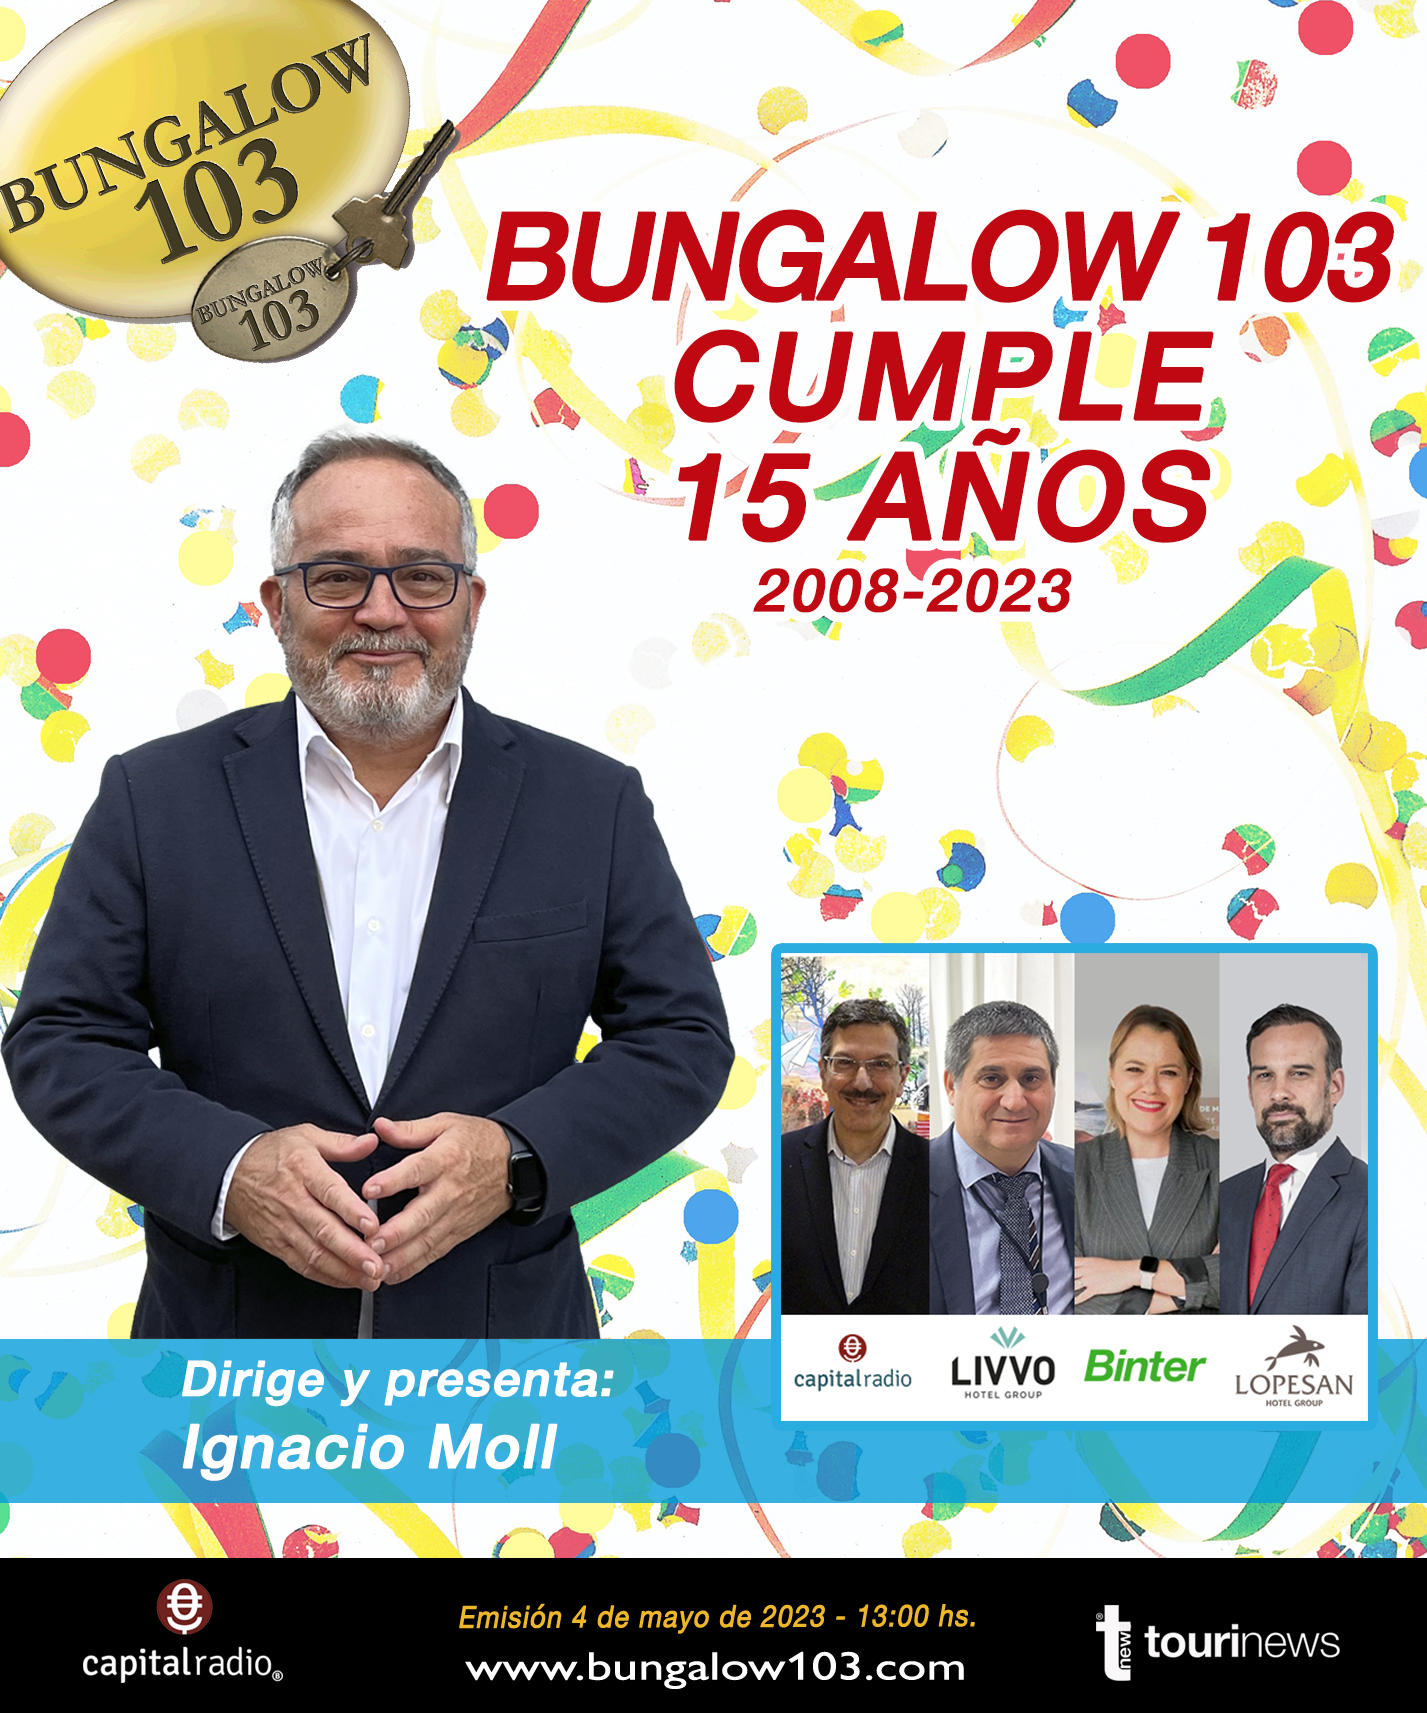 BUNGALOW 103 CUMPLE 15 AÑOS